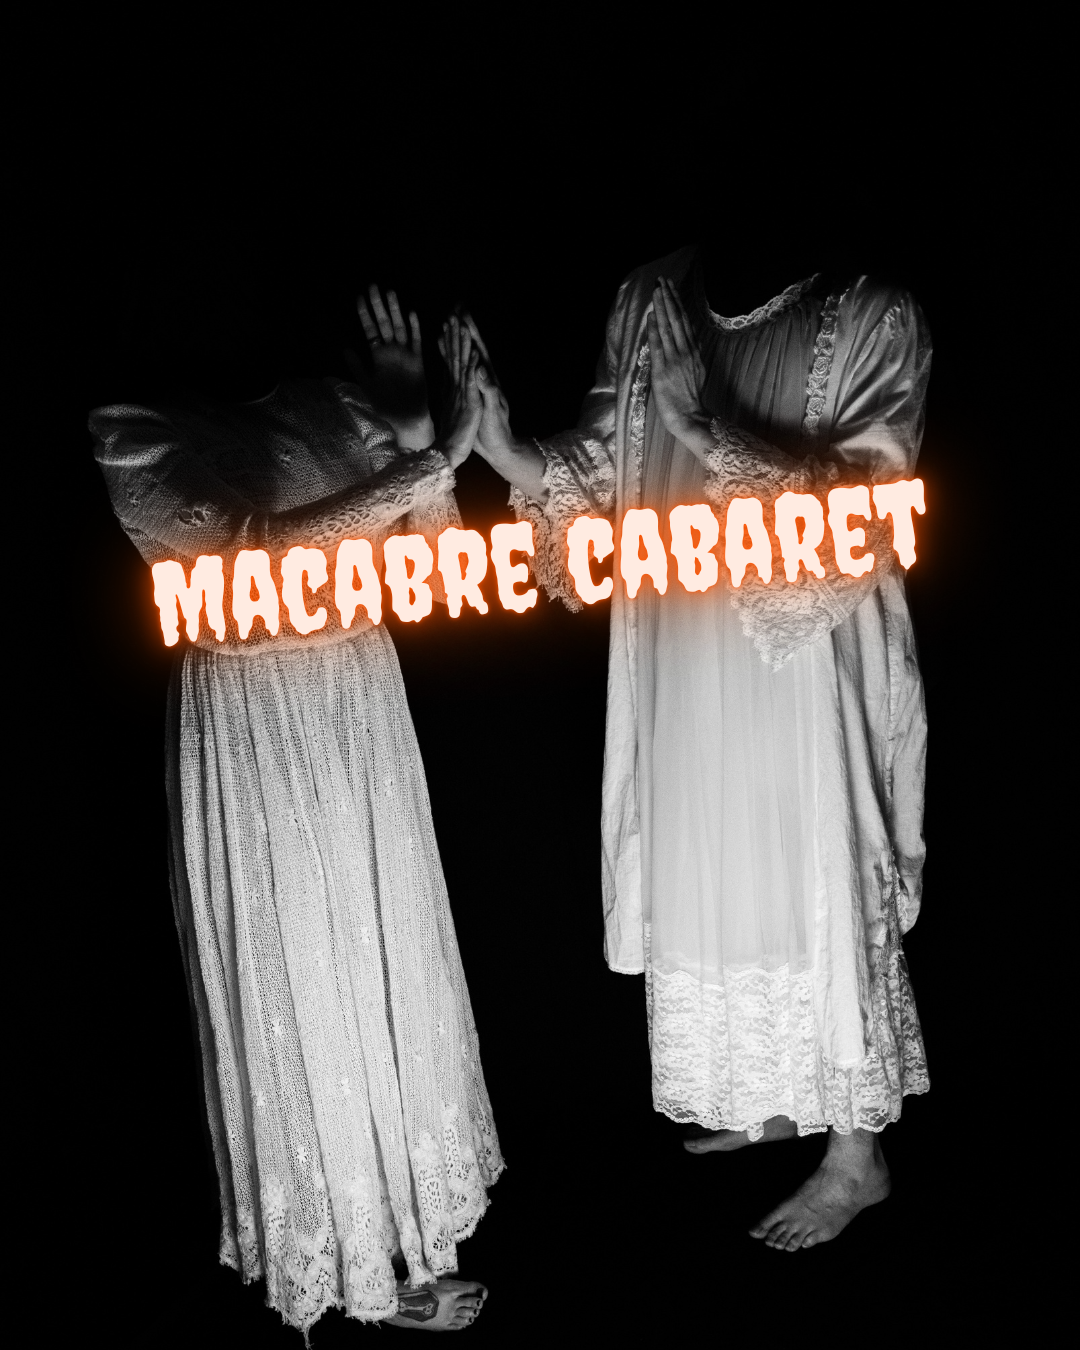 Macabre Cabaret